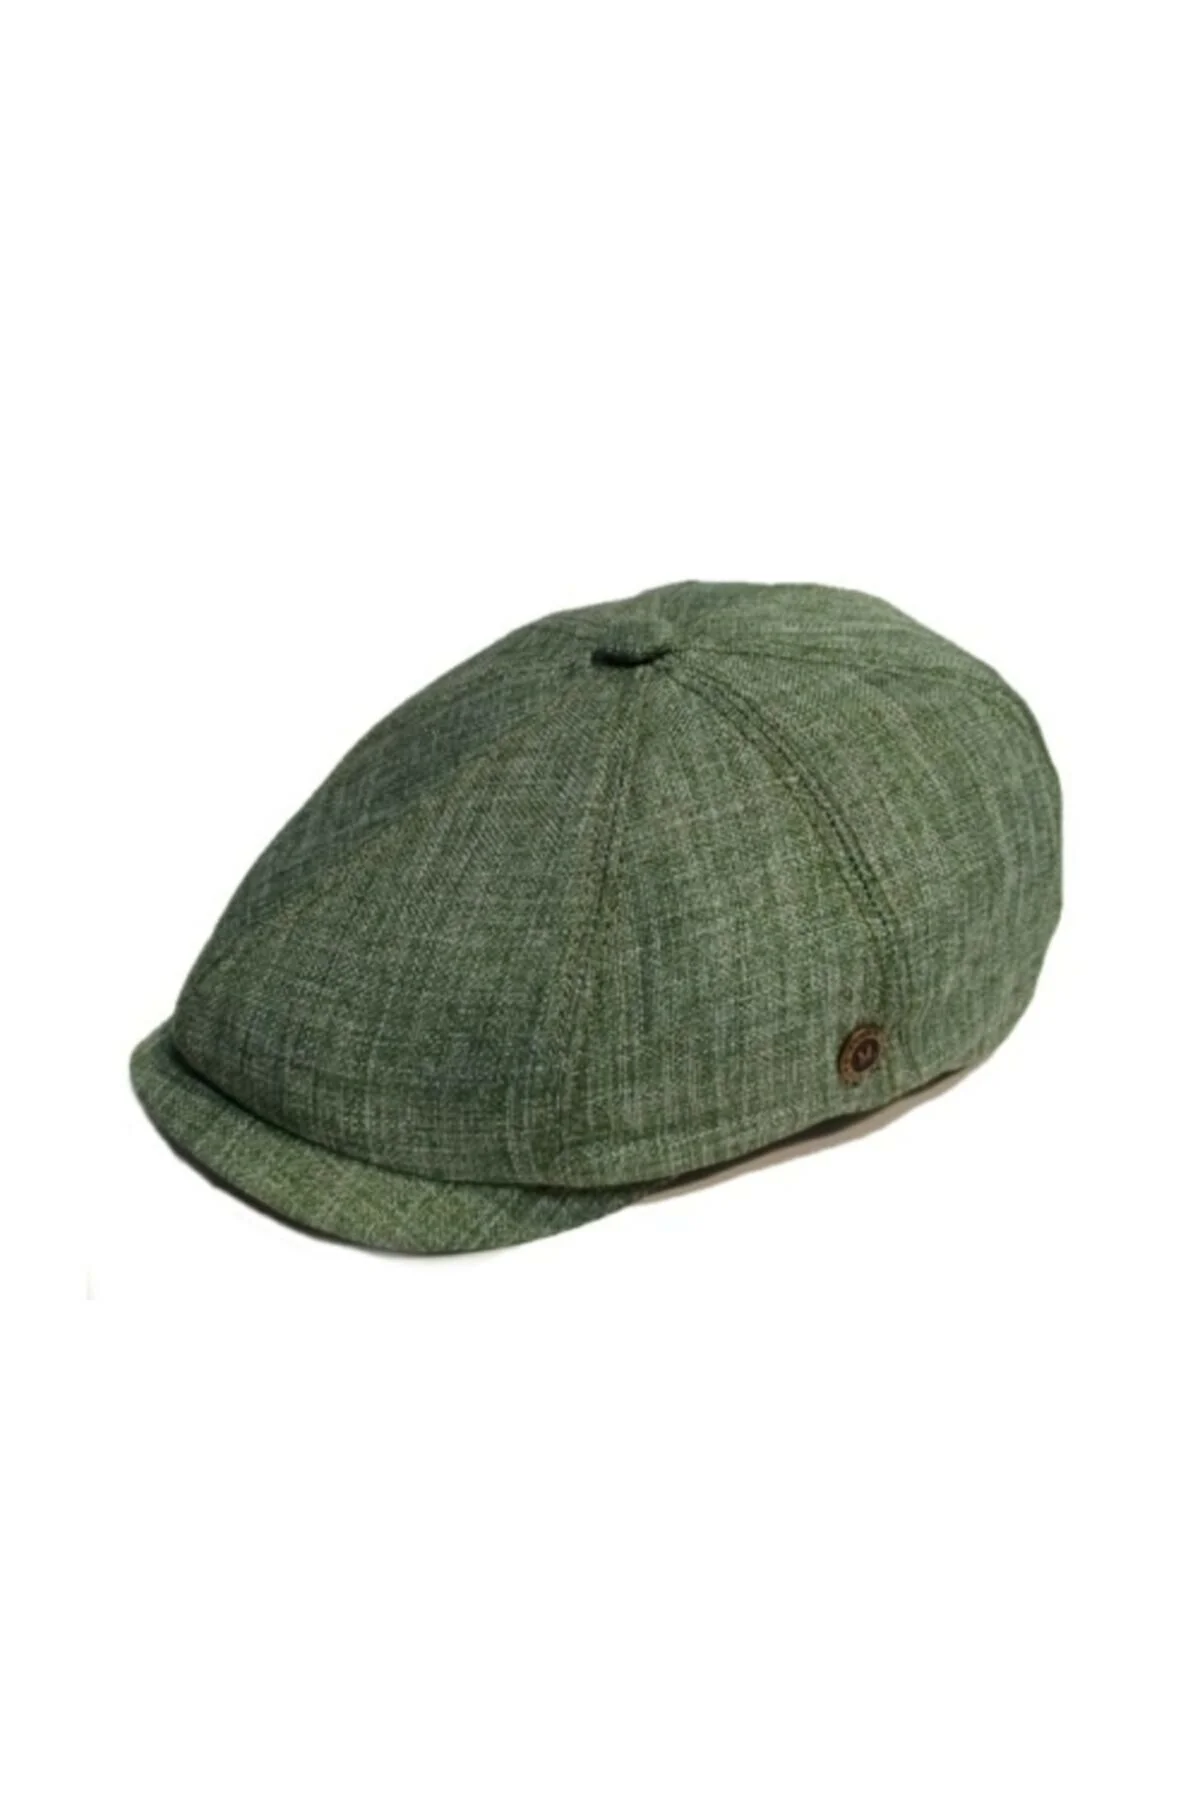 فروش انلاین کلاه مردانه مجلسی برند Melik şapka رنگ خاکی کد ty93748441